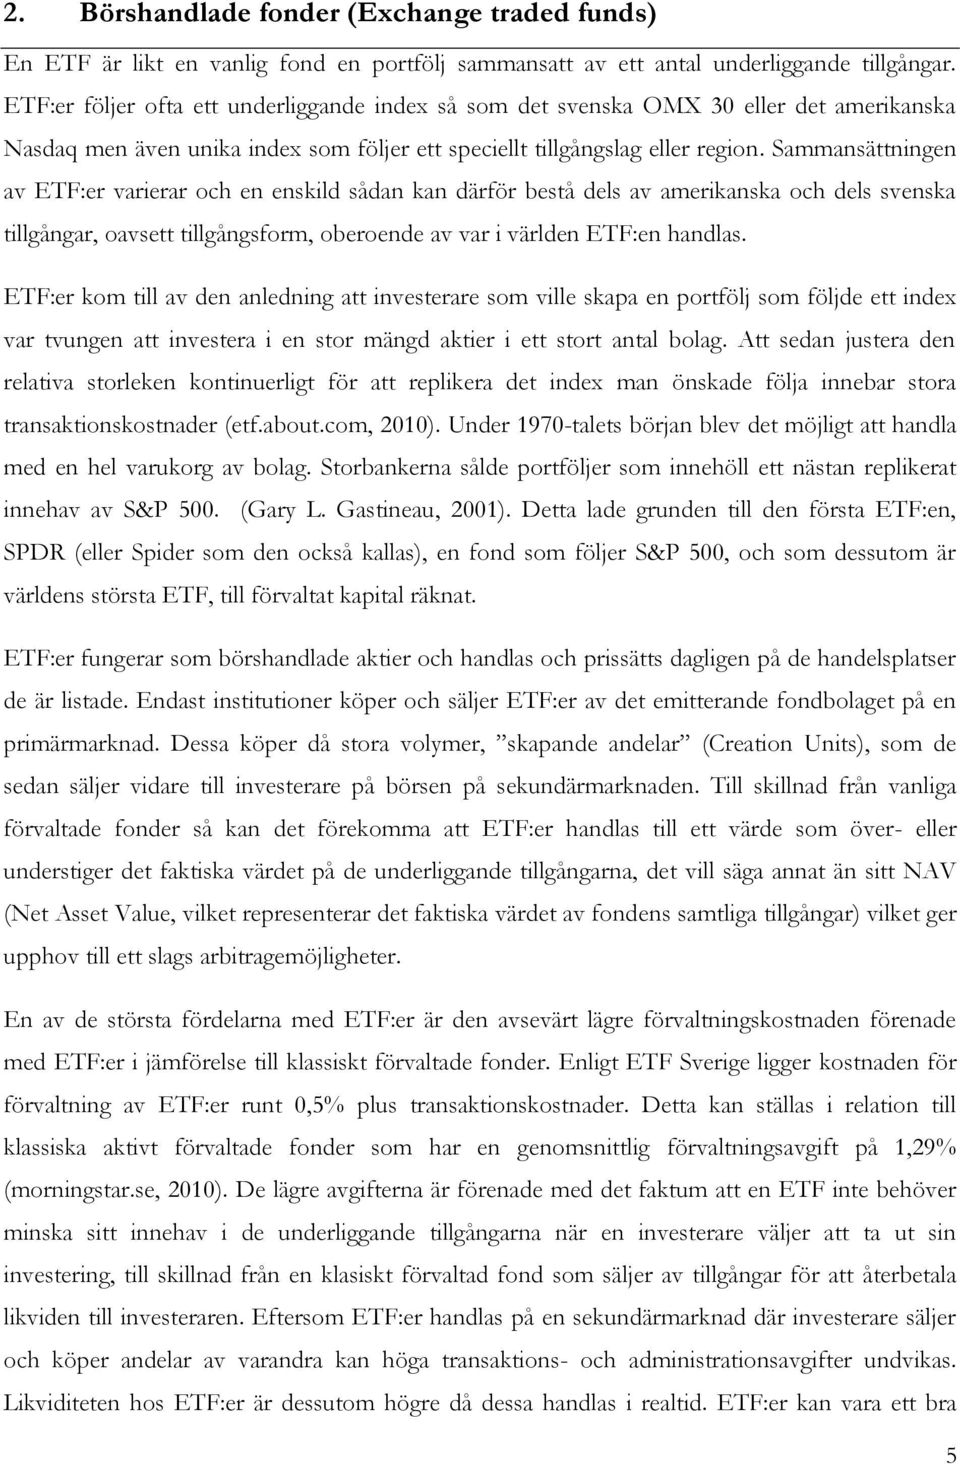 Sammansättningen av ETF:er varierar och en enskild sådan kan därför bestå dels av amerikanska och dels svenska tillgångar, oavsett tillgångsform, oberoende av var i världen ETF:en handlas.